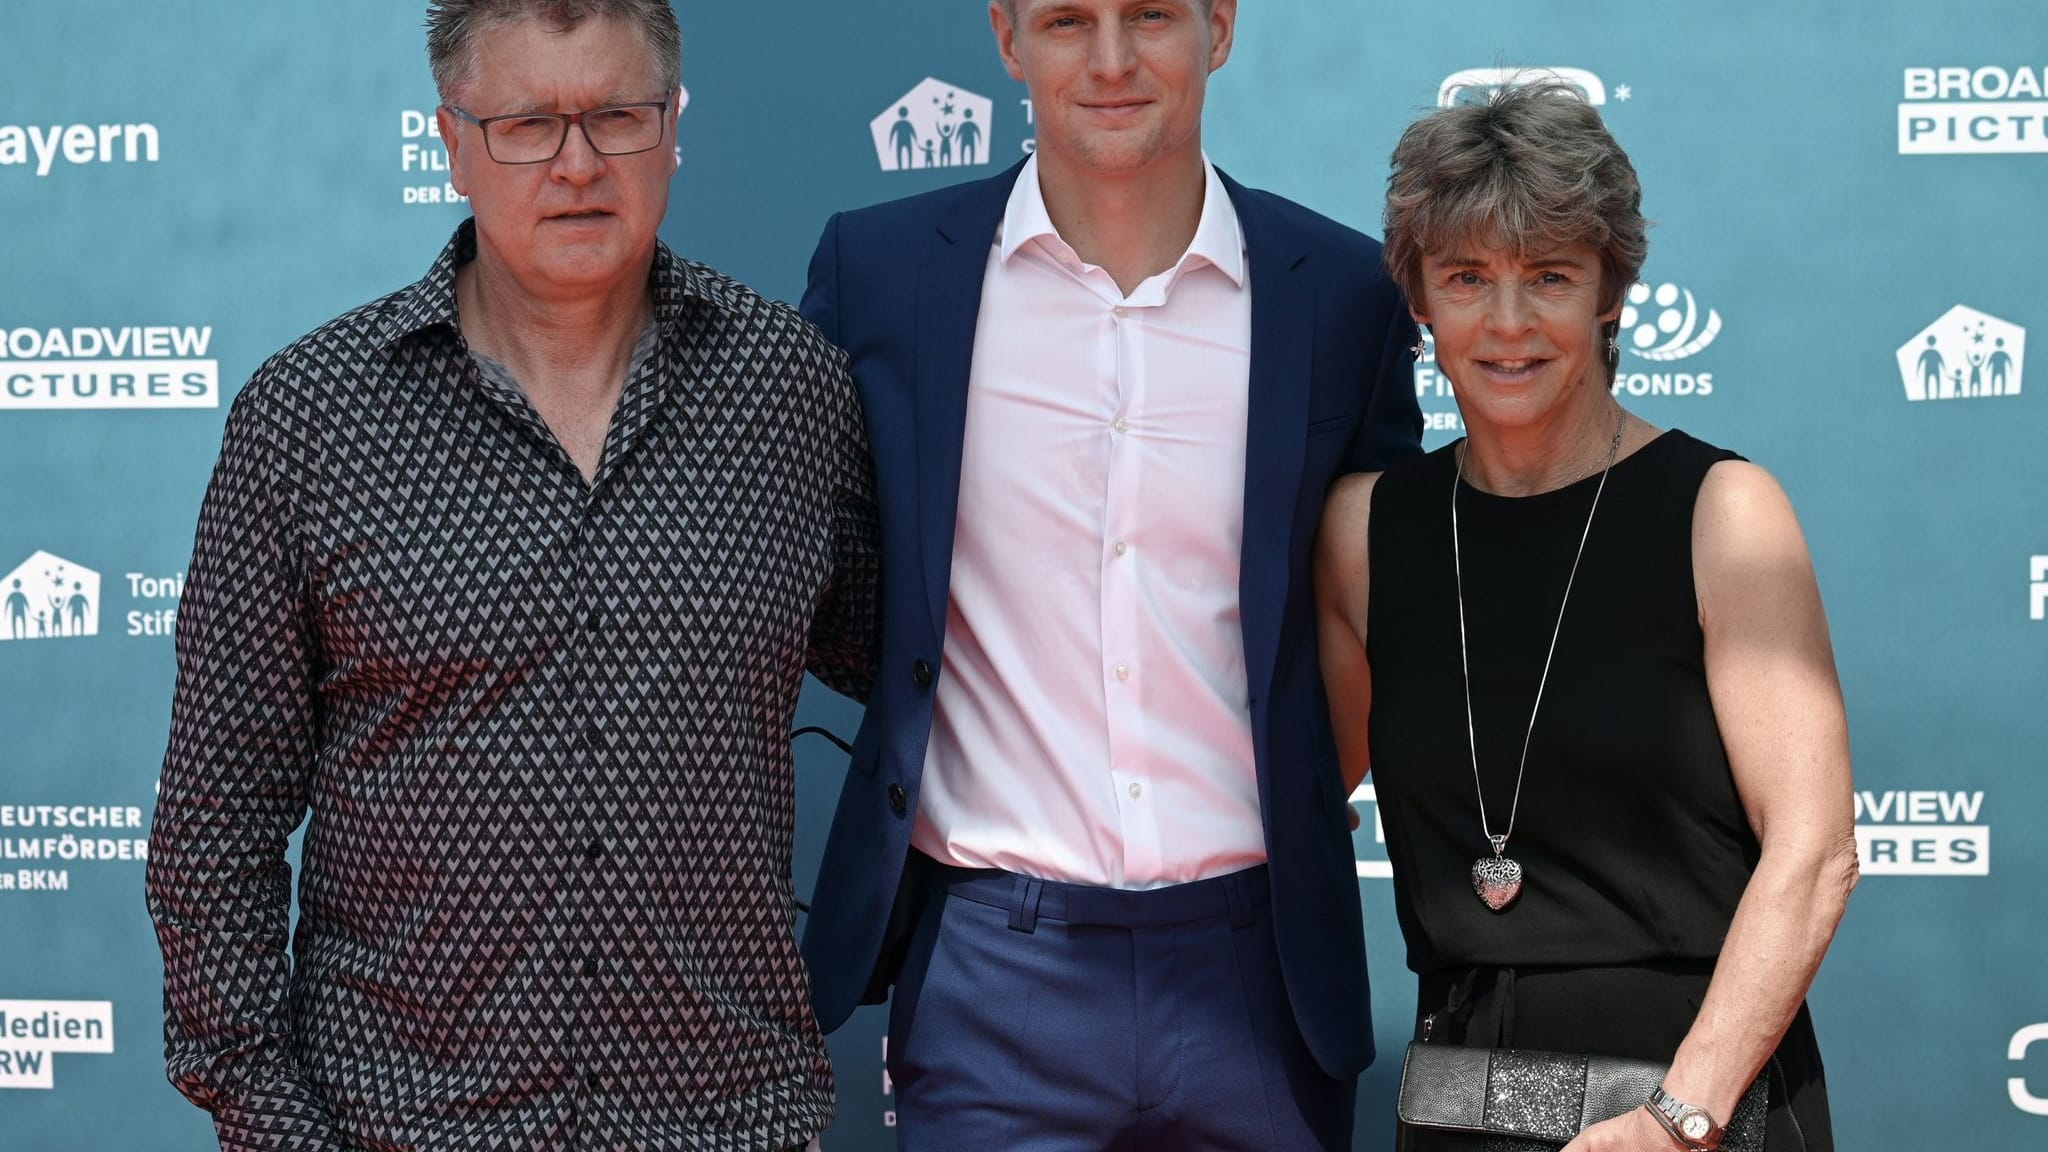 Papa Kroos über Comeback des Sohns: «Druck war riesig»